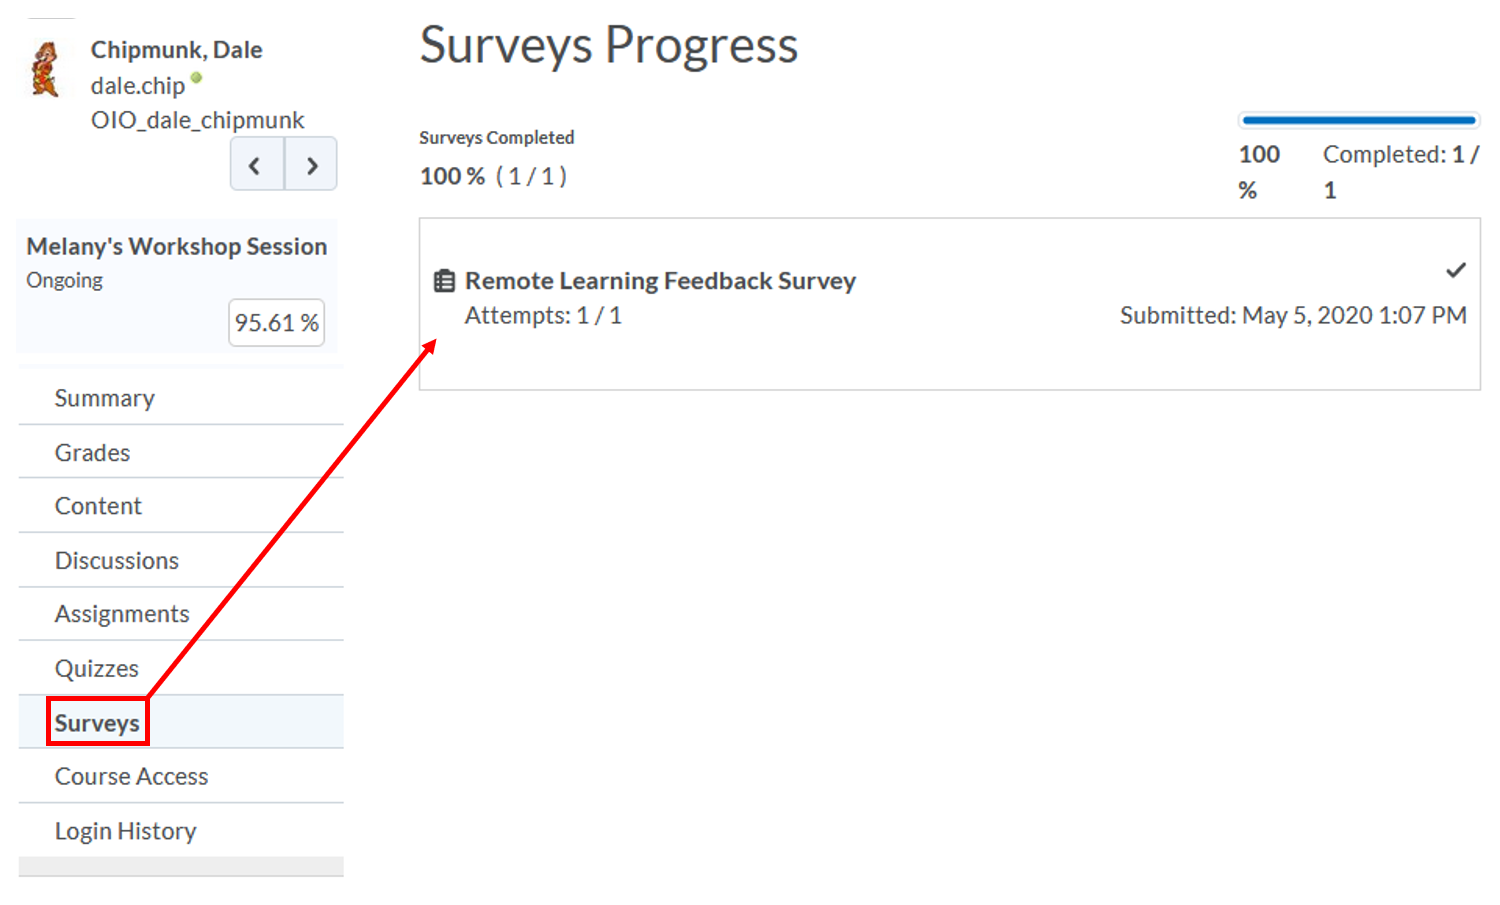 class-progress: Surveys Progress